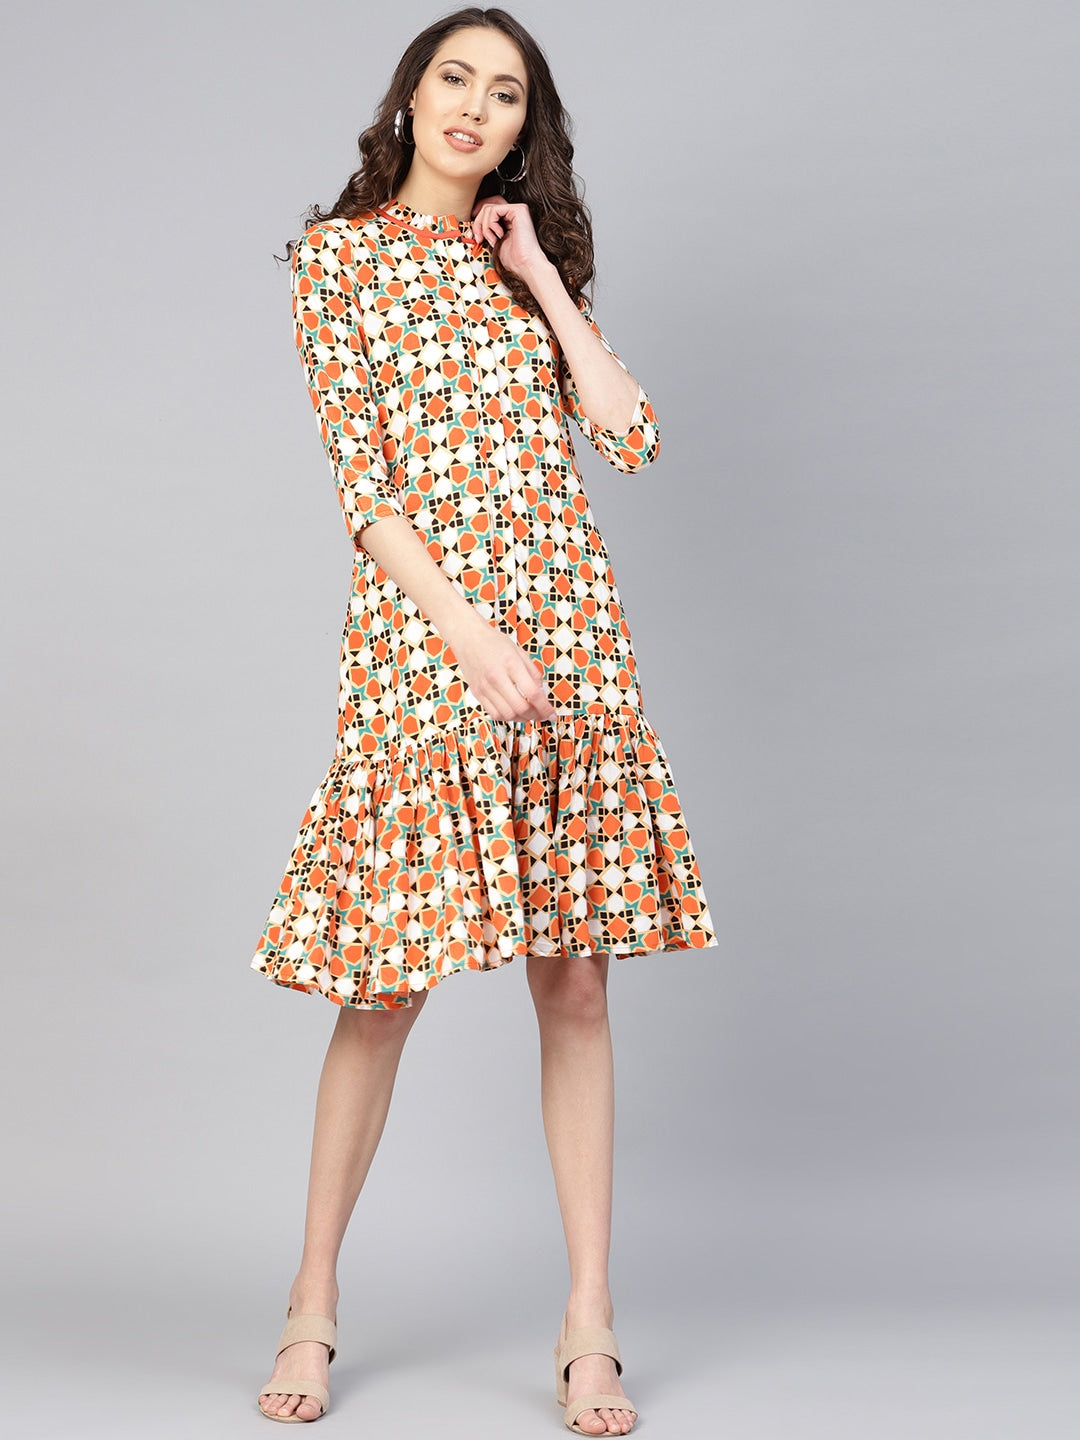 Orange & White Printed Dress-Yufta Store-YUFDGKU2037N-XS